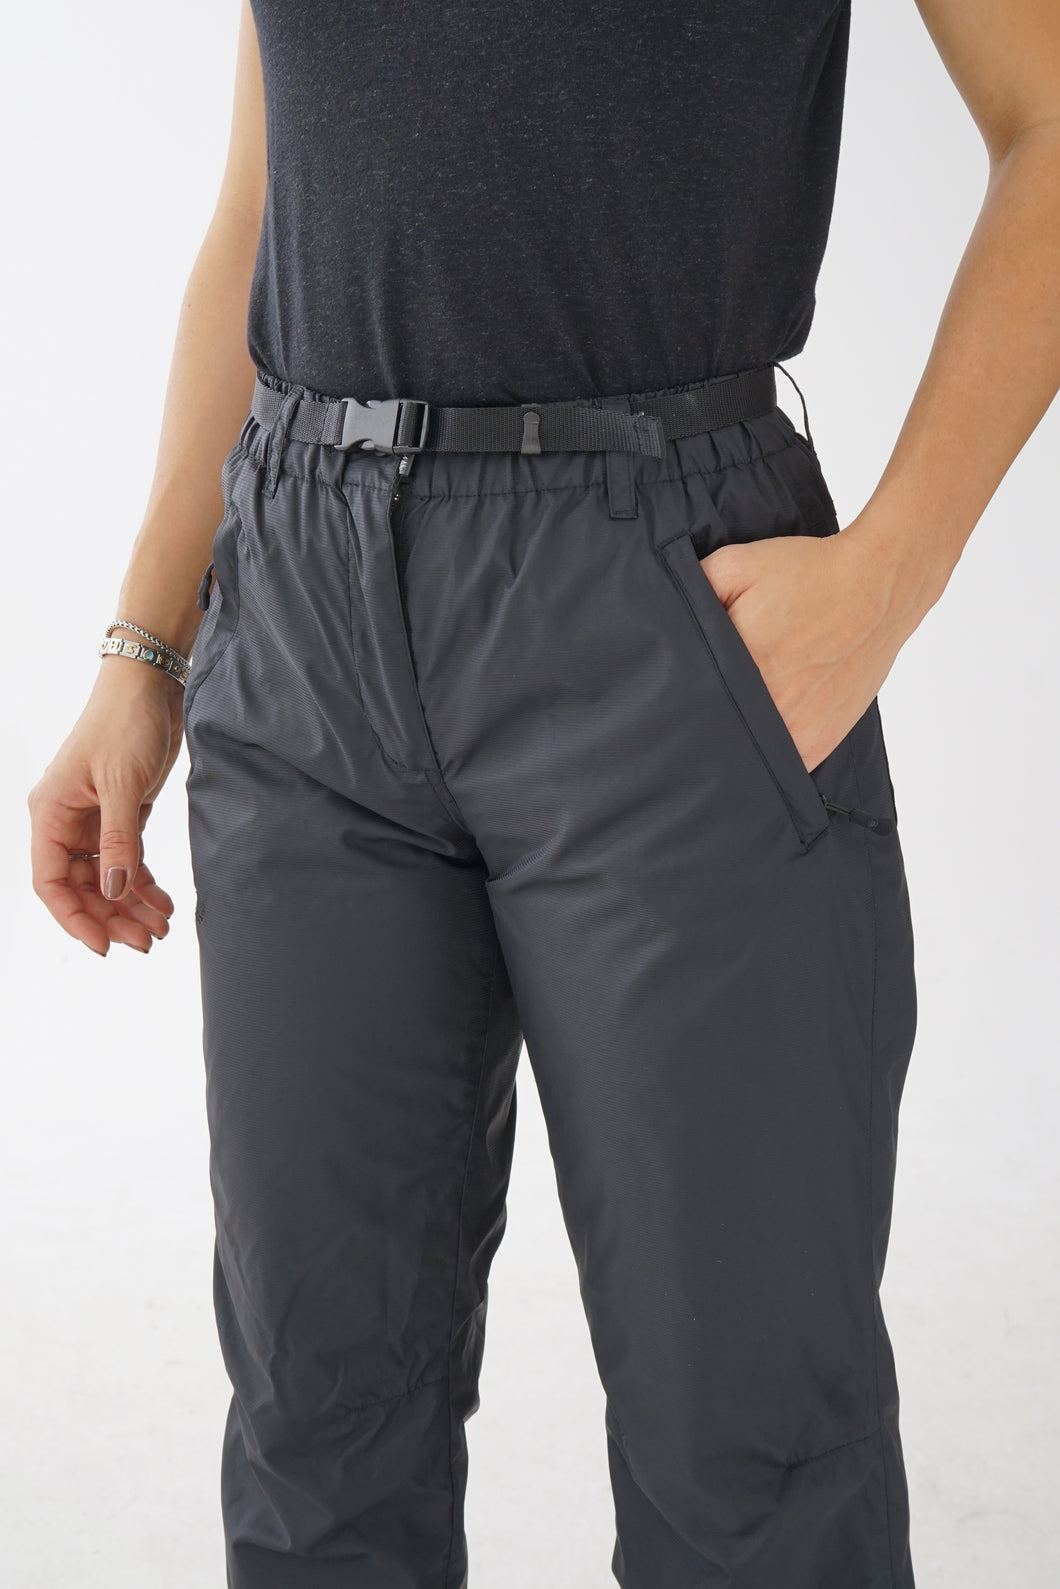 Pantalon imperméable doublé style hardshell Wetskin noir pour femme taille S